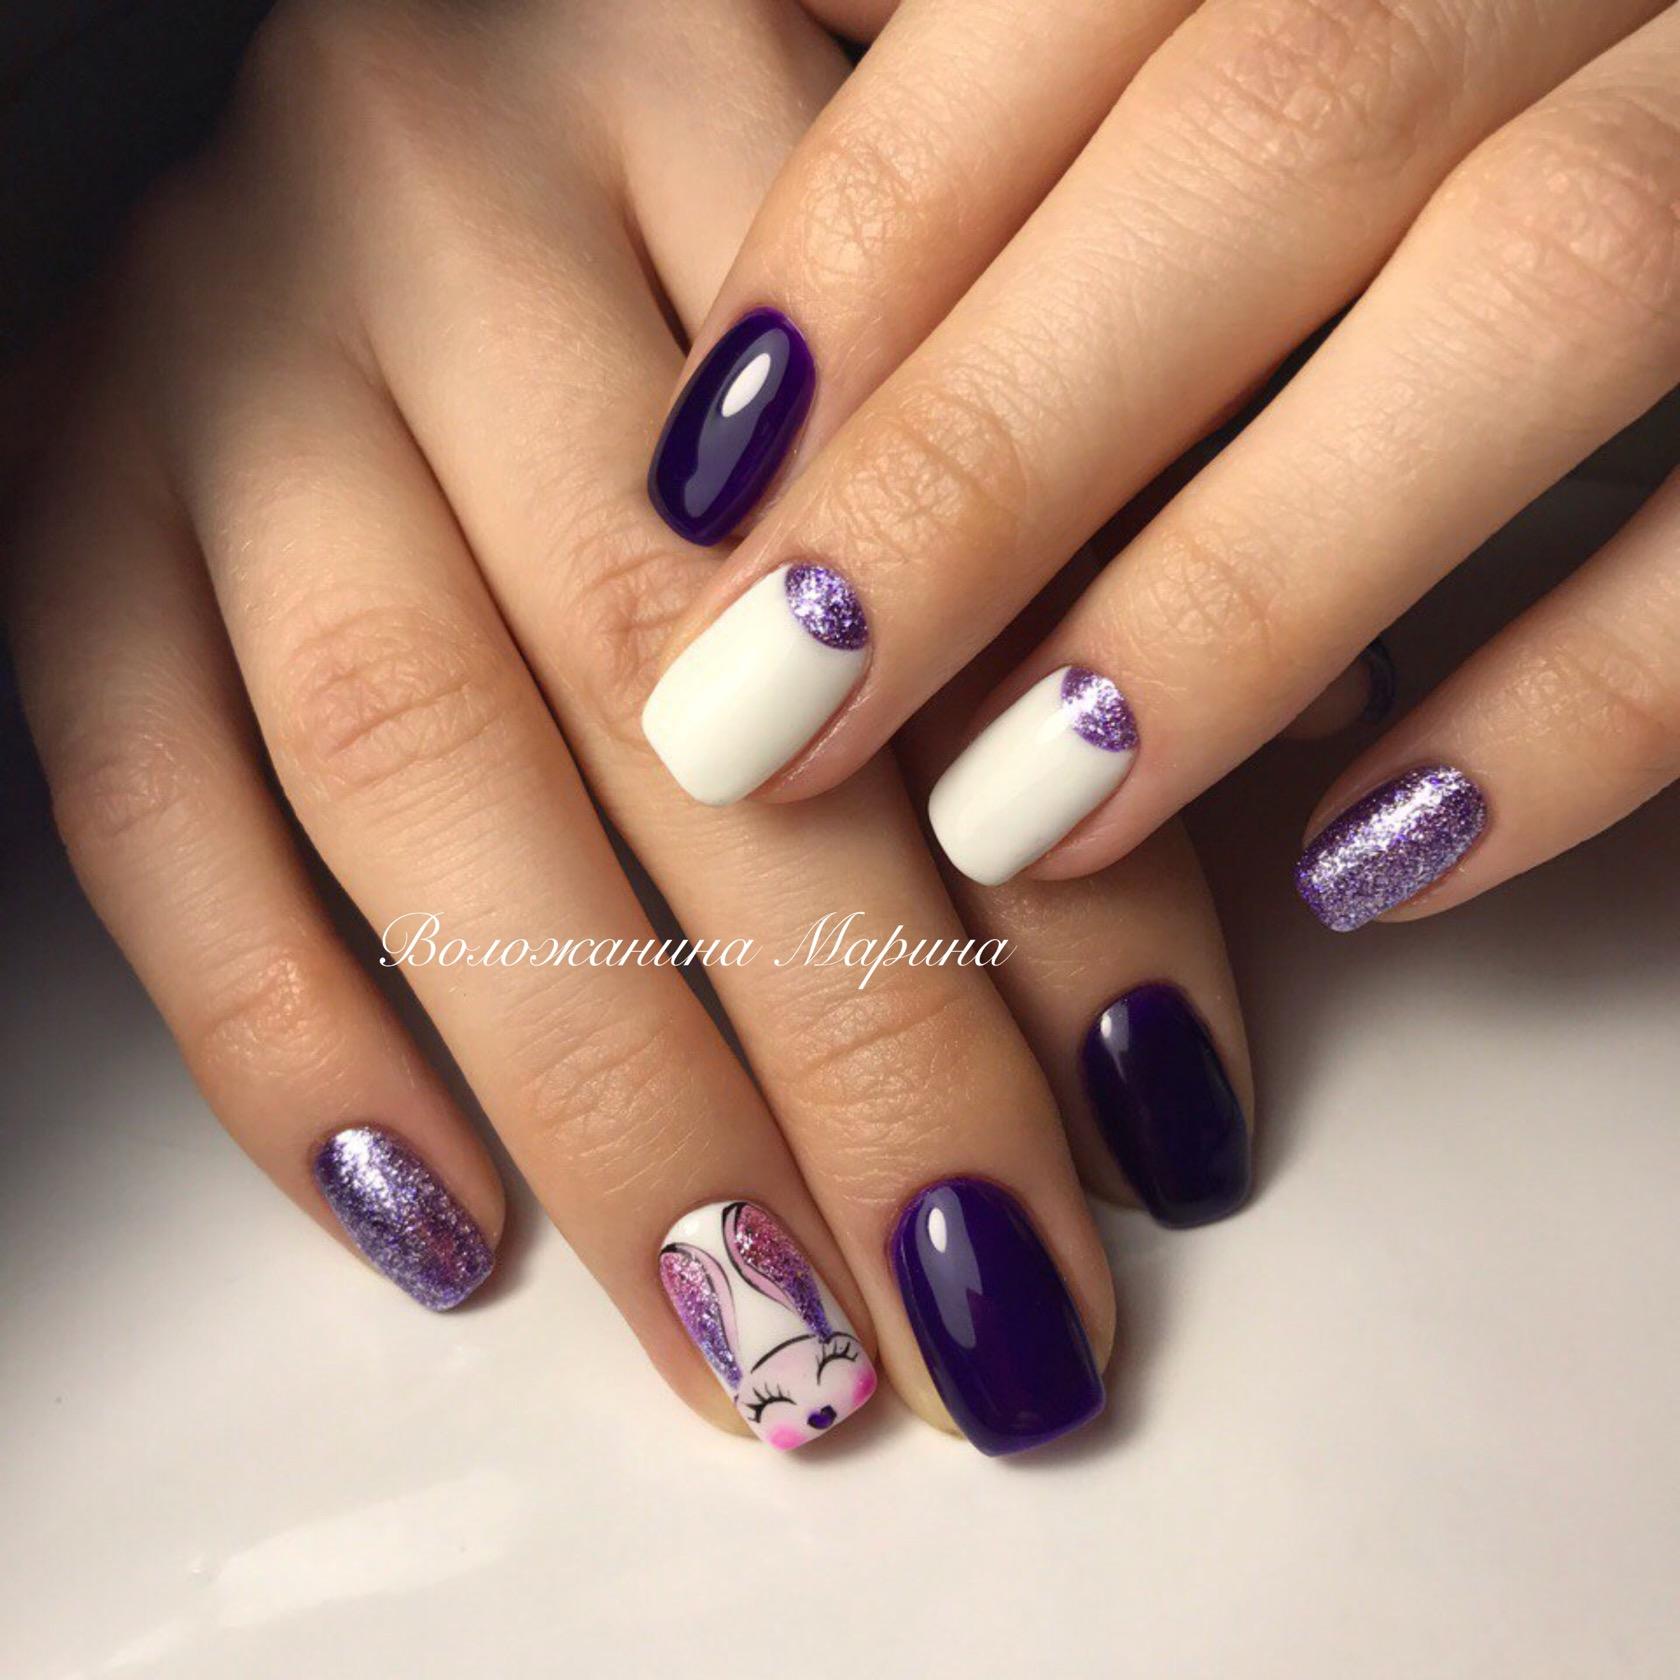 Ногти фиолетовые с белым